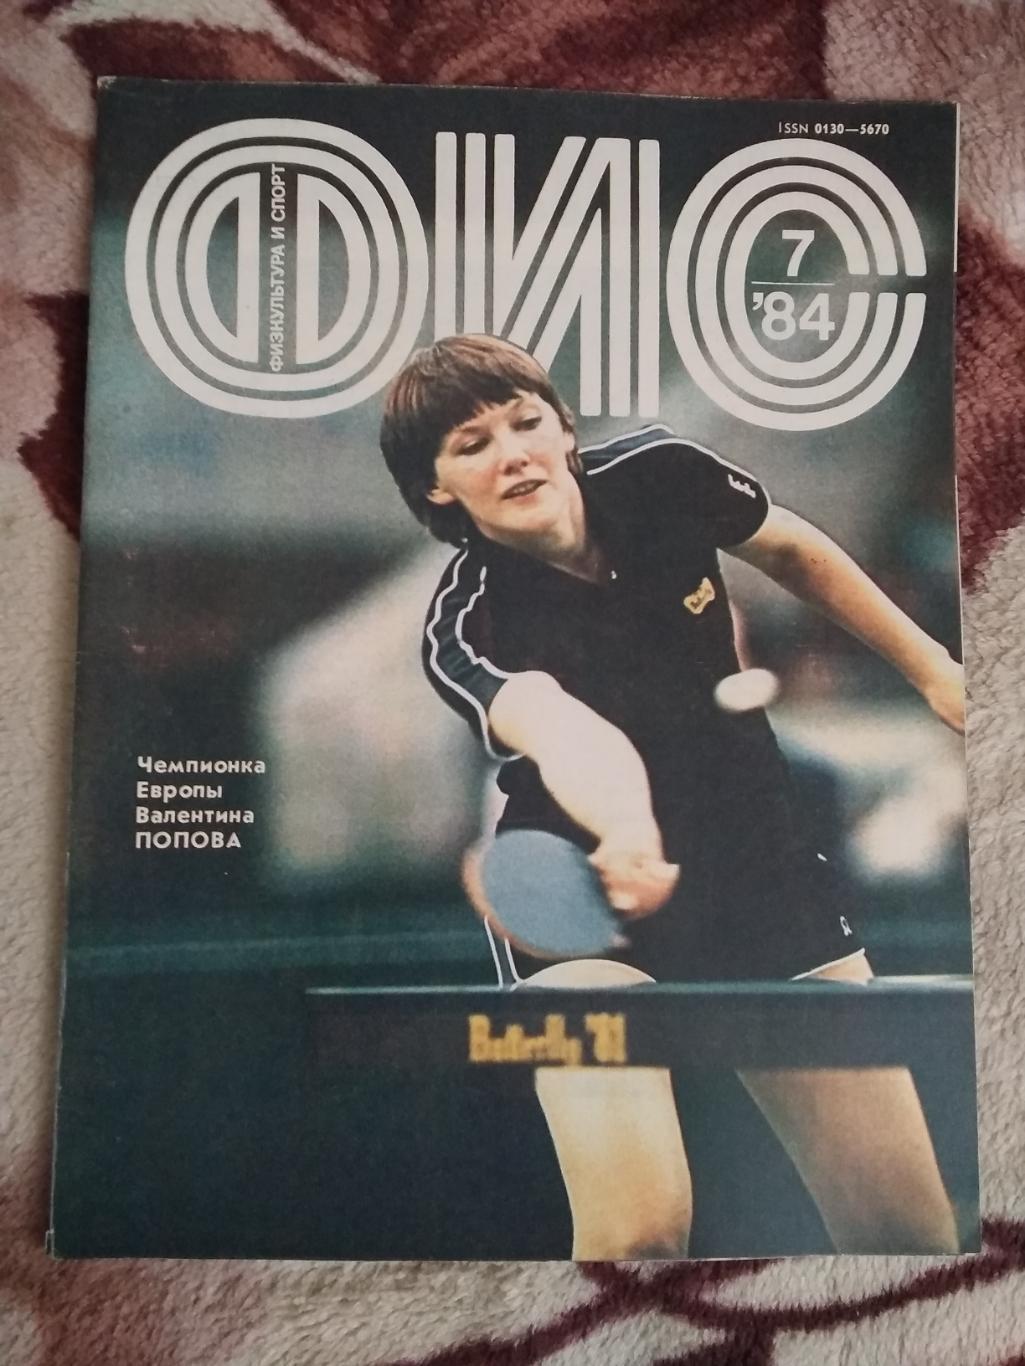 Журнал.Физкультура и спорт № 7 1984 г. (ФиС).